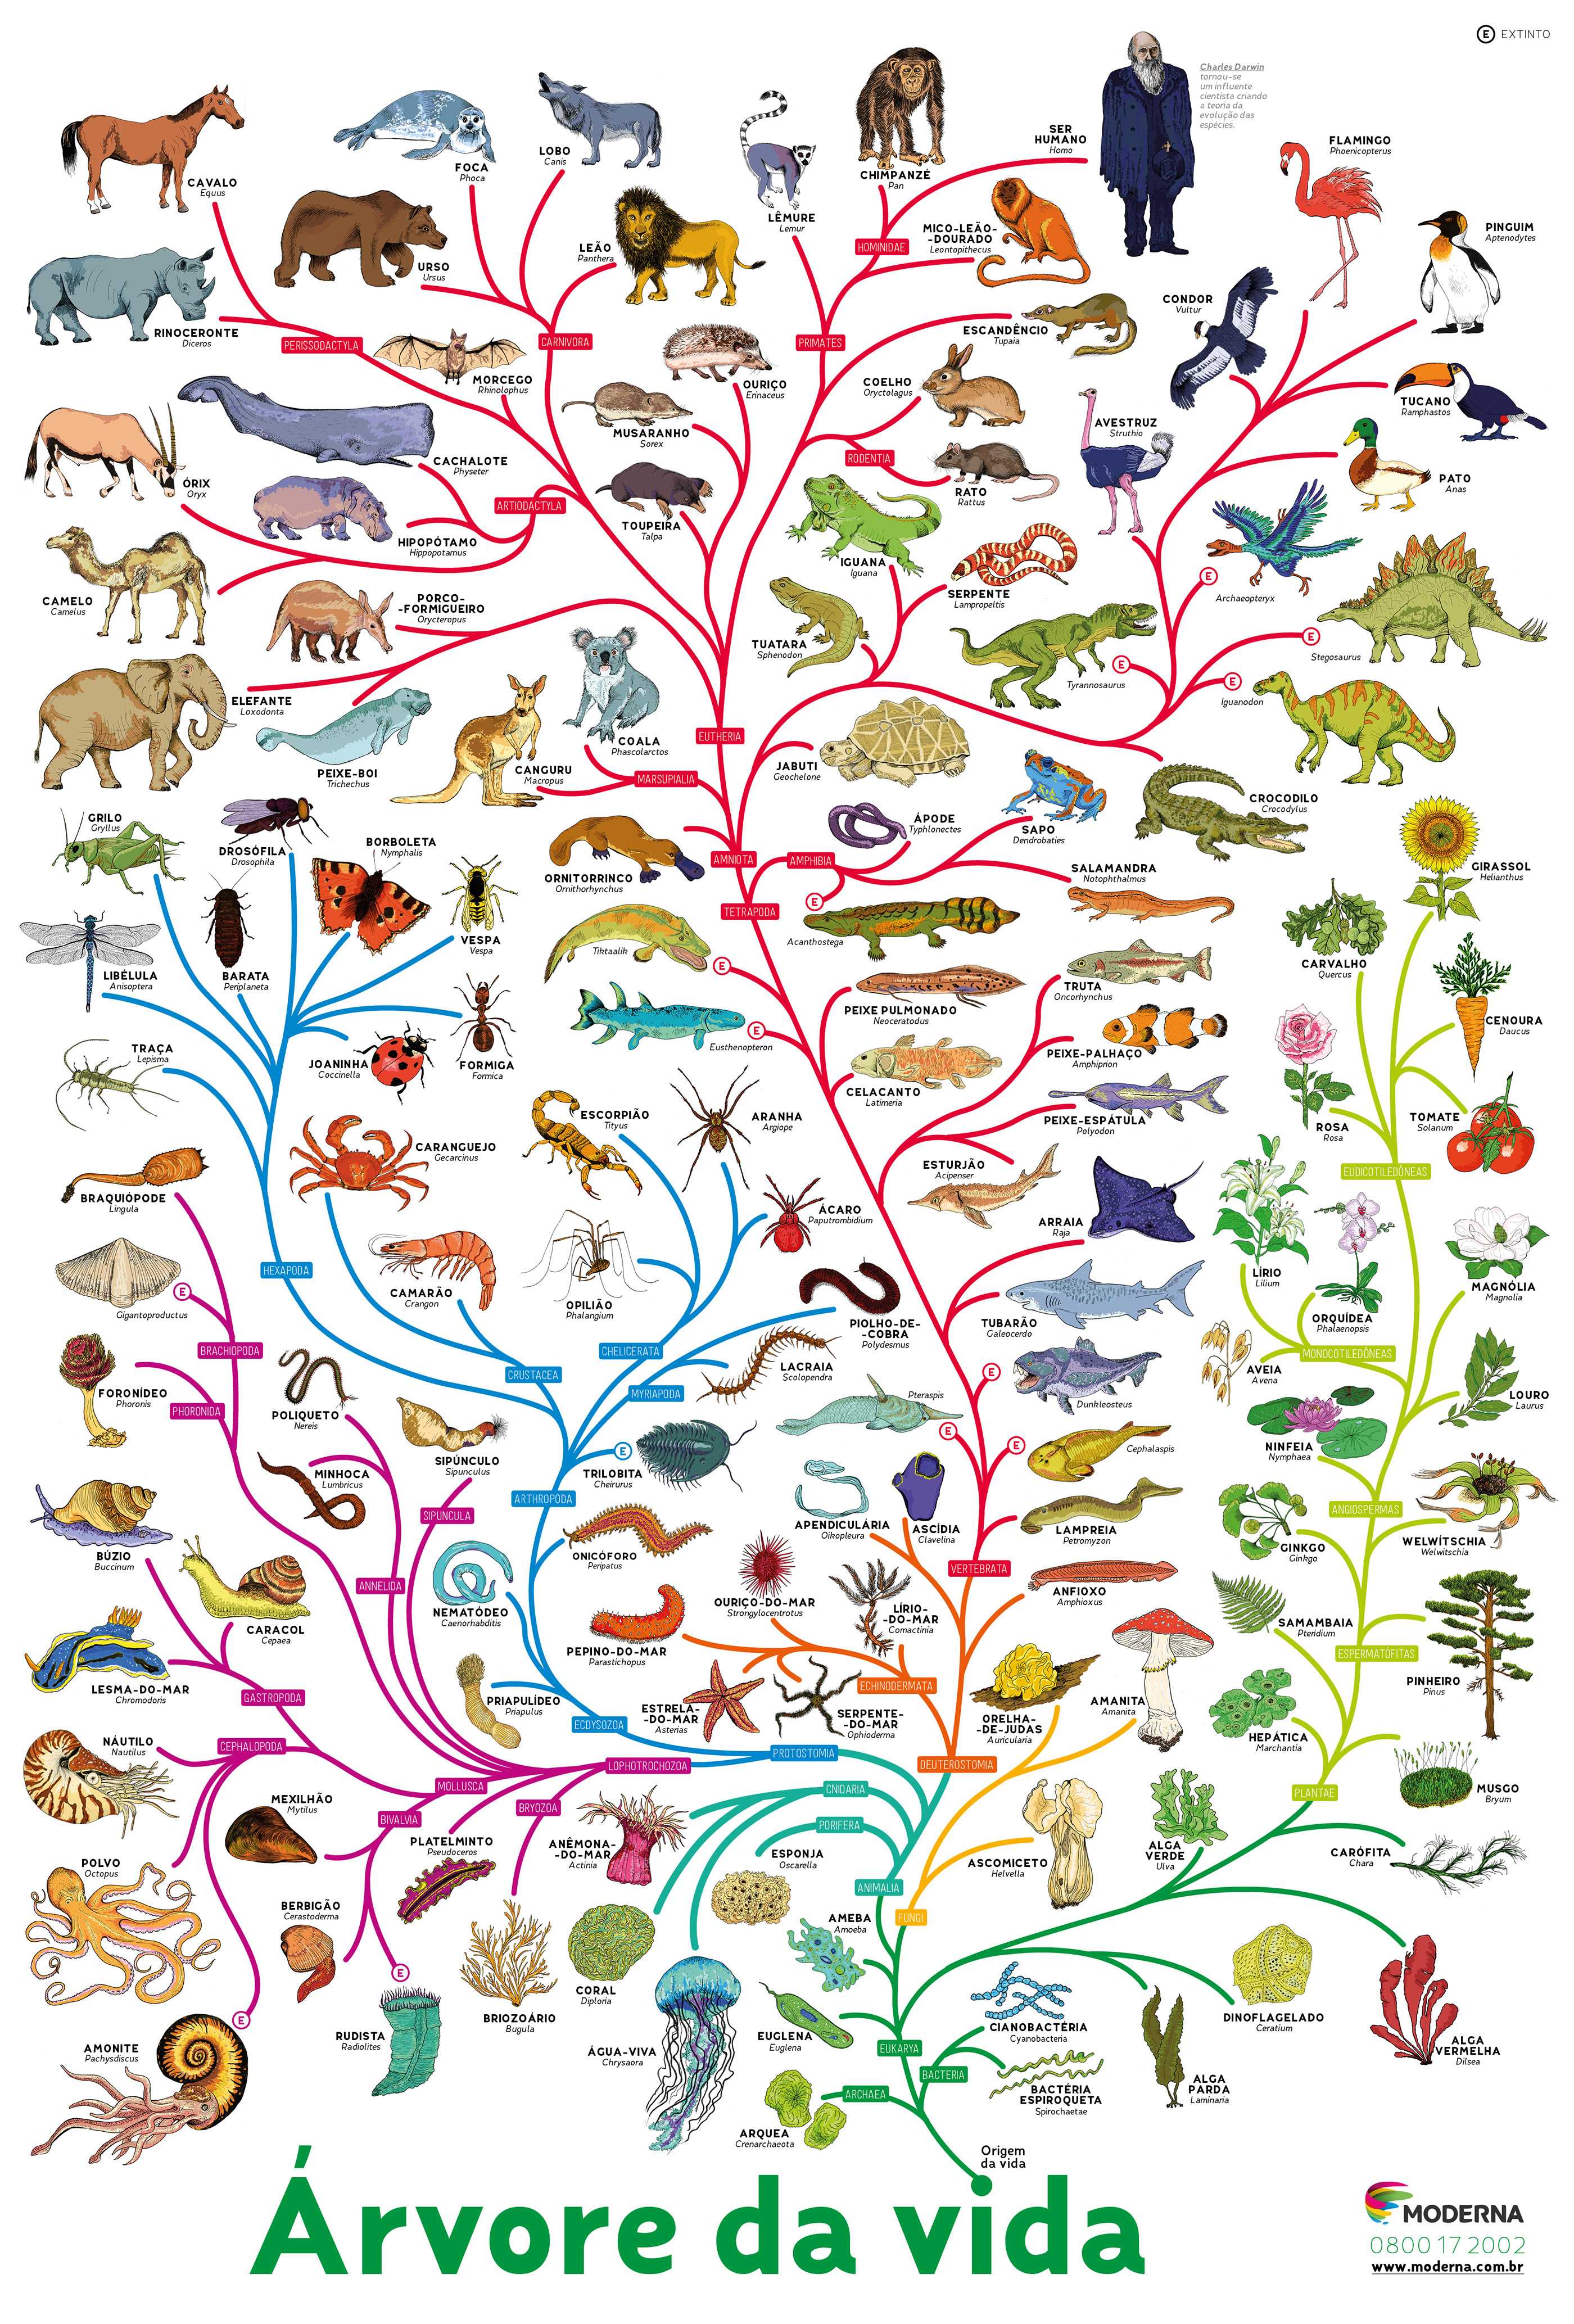 Ход эволюции животного мира и этапы развитие животных на земле — природа мира